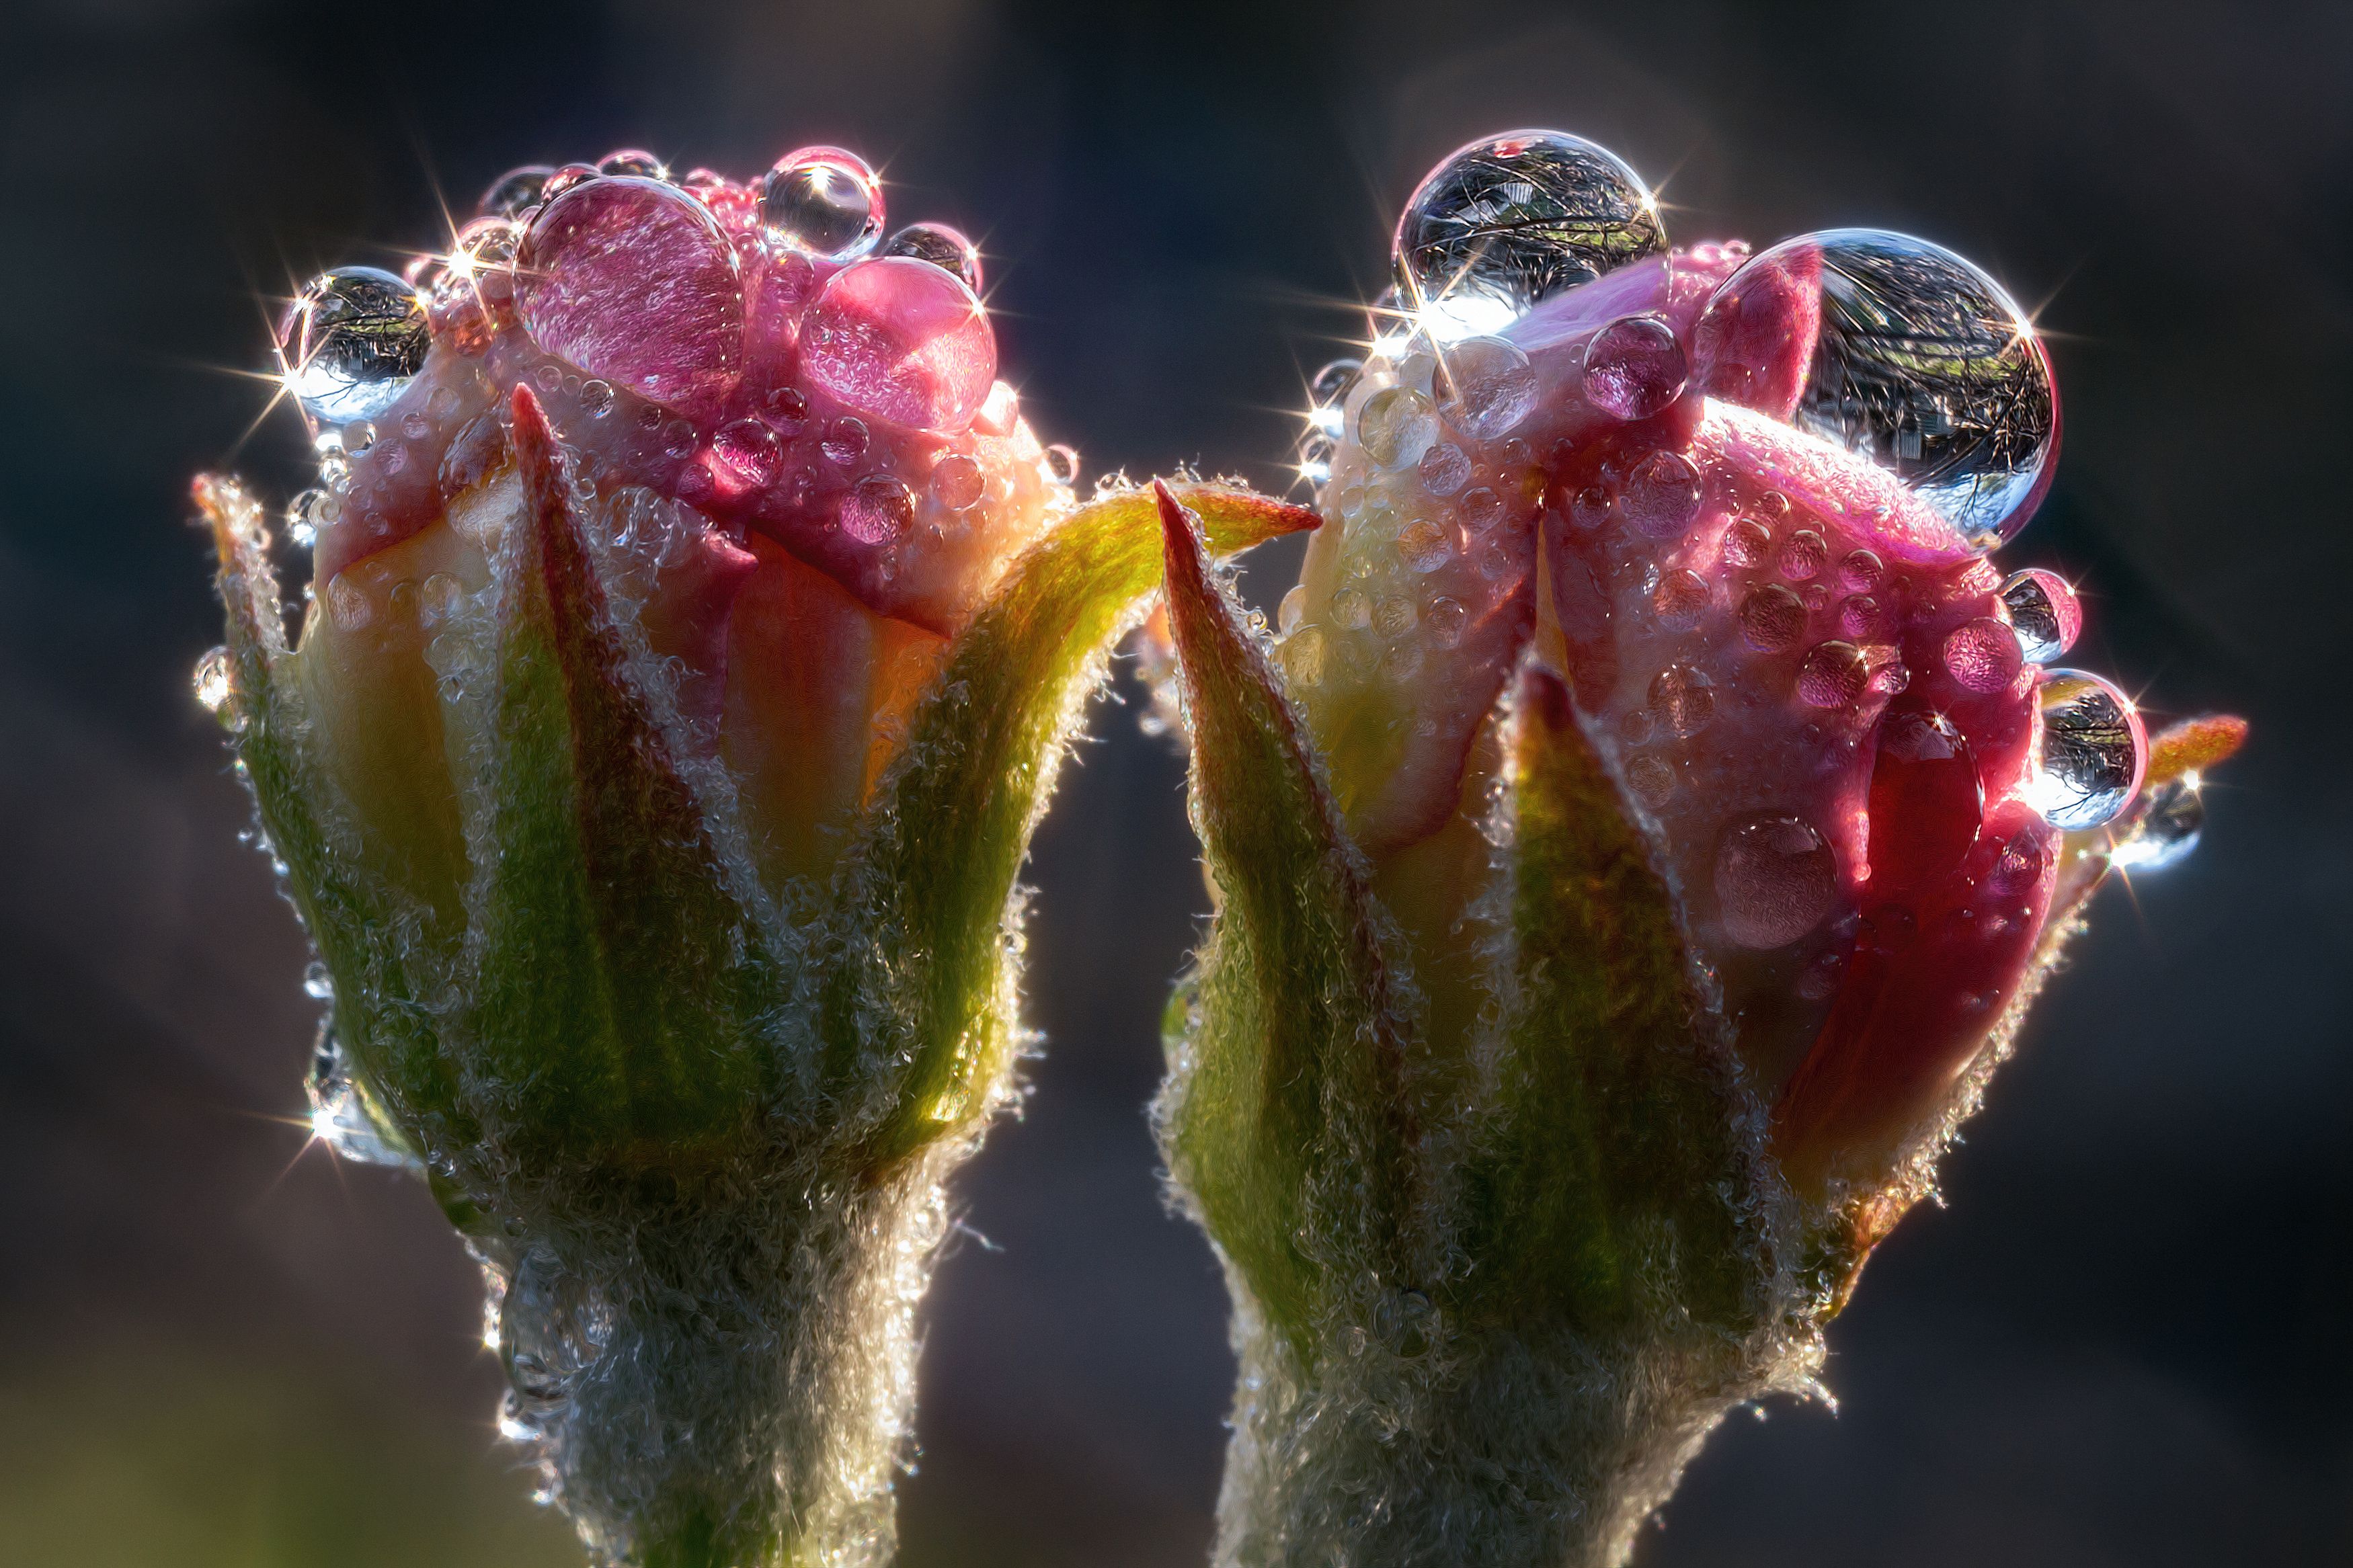 цветки бутоны яблоня капли роса макро фотография весна природа свет цвет, Еремеев Дмитрий